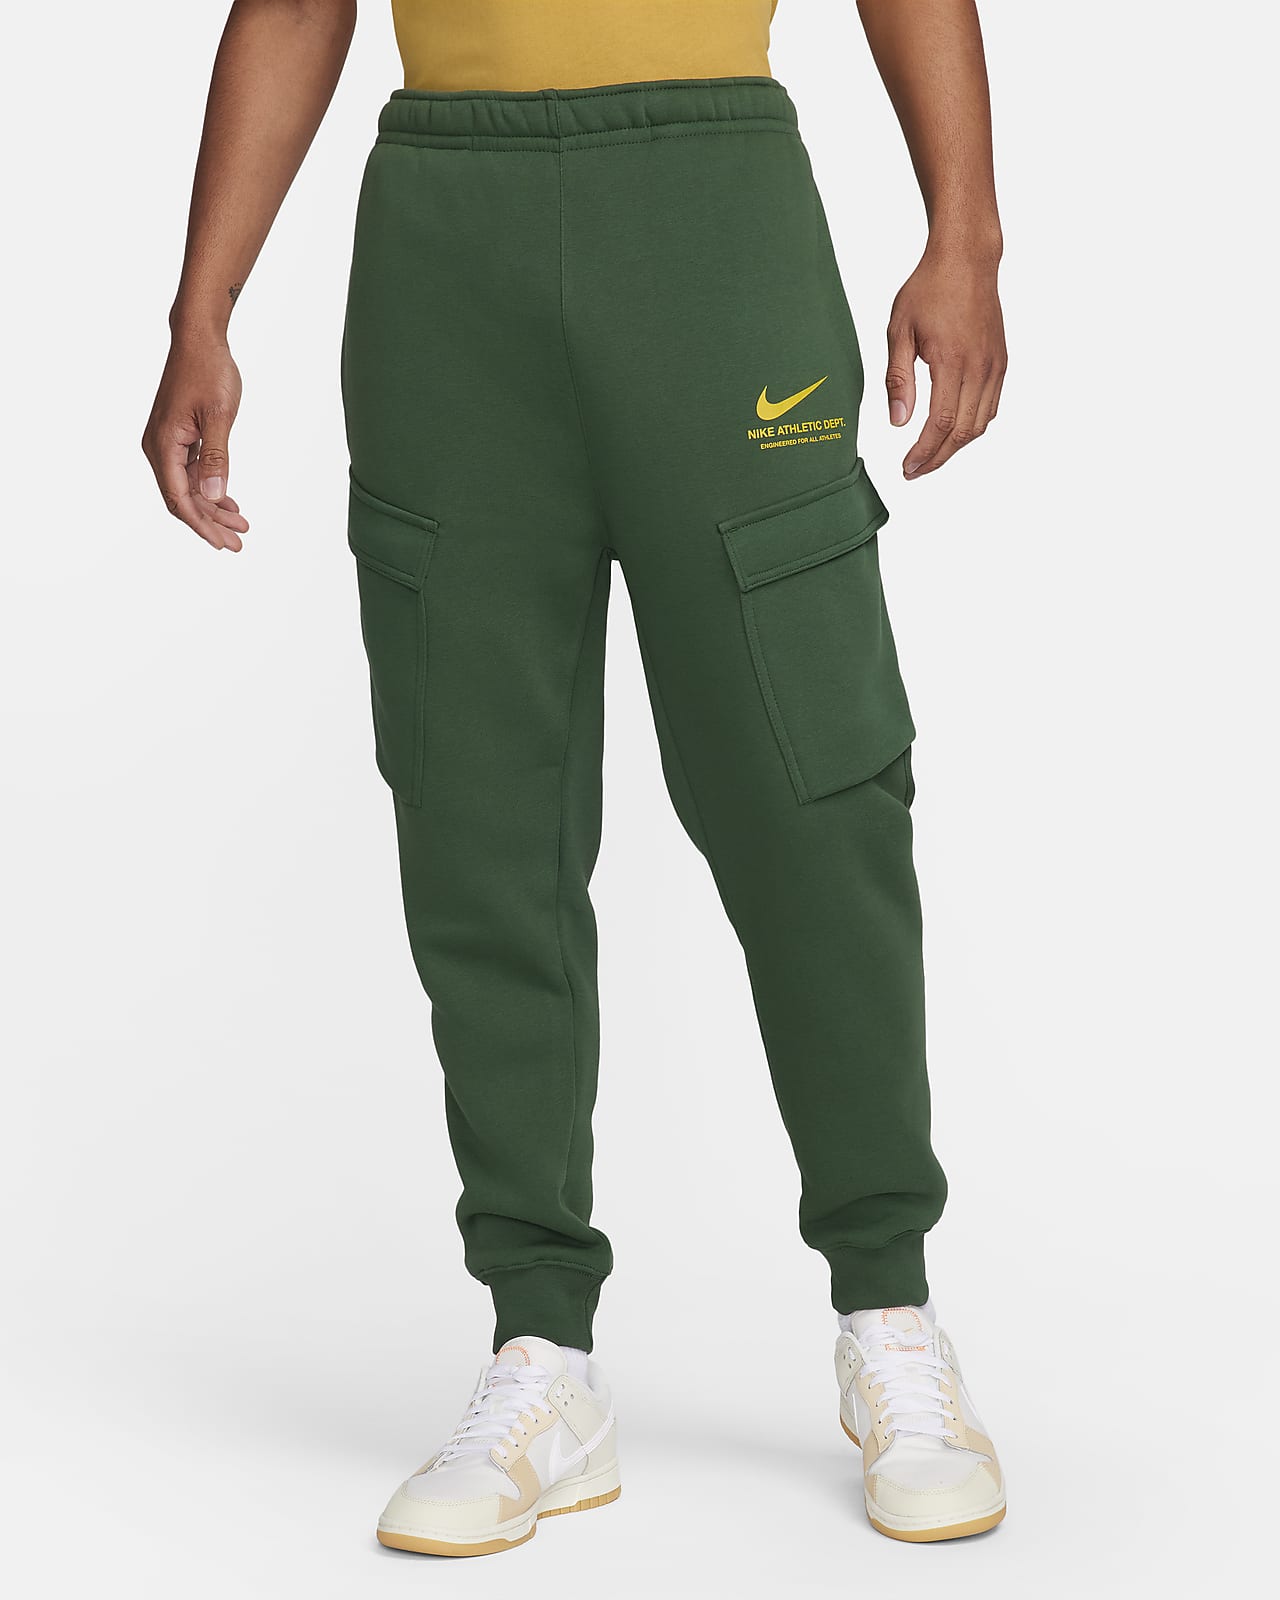 Pantalons et Collants pour Homme. Nike CA